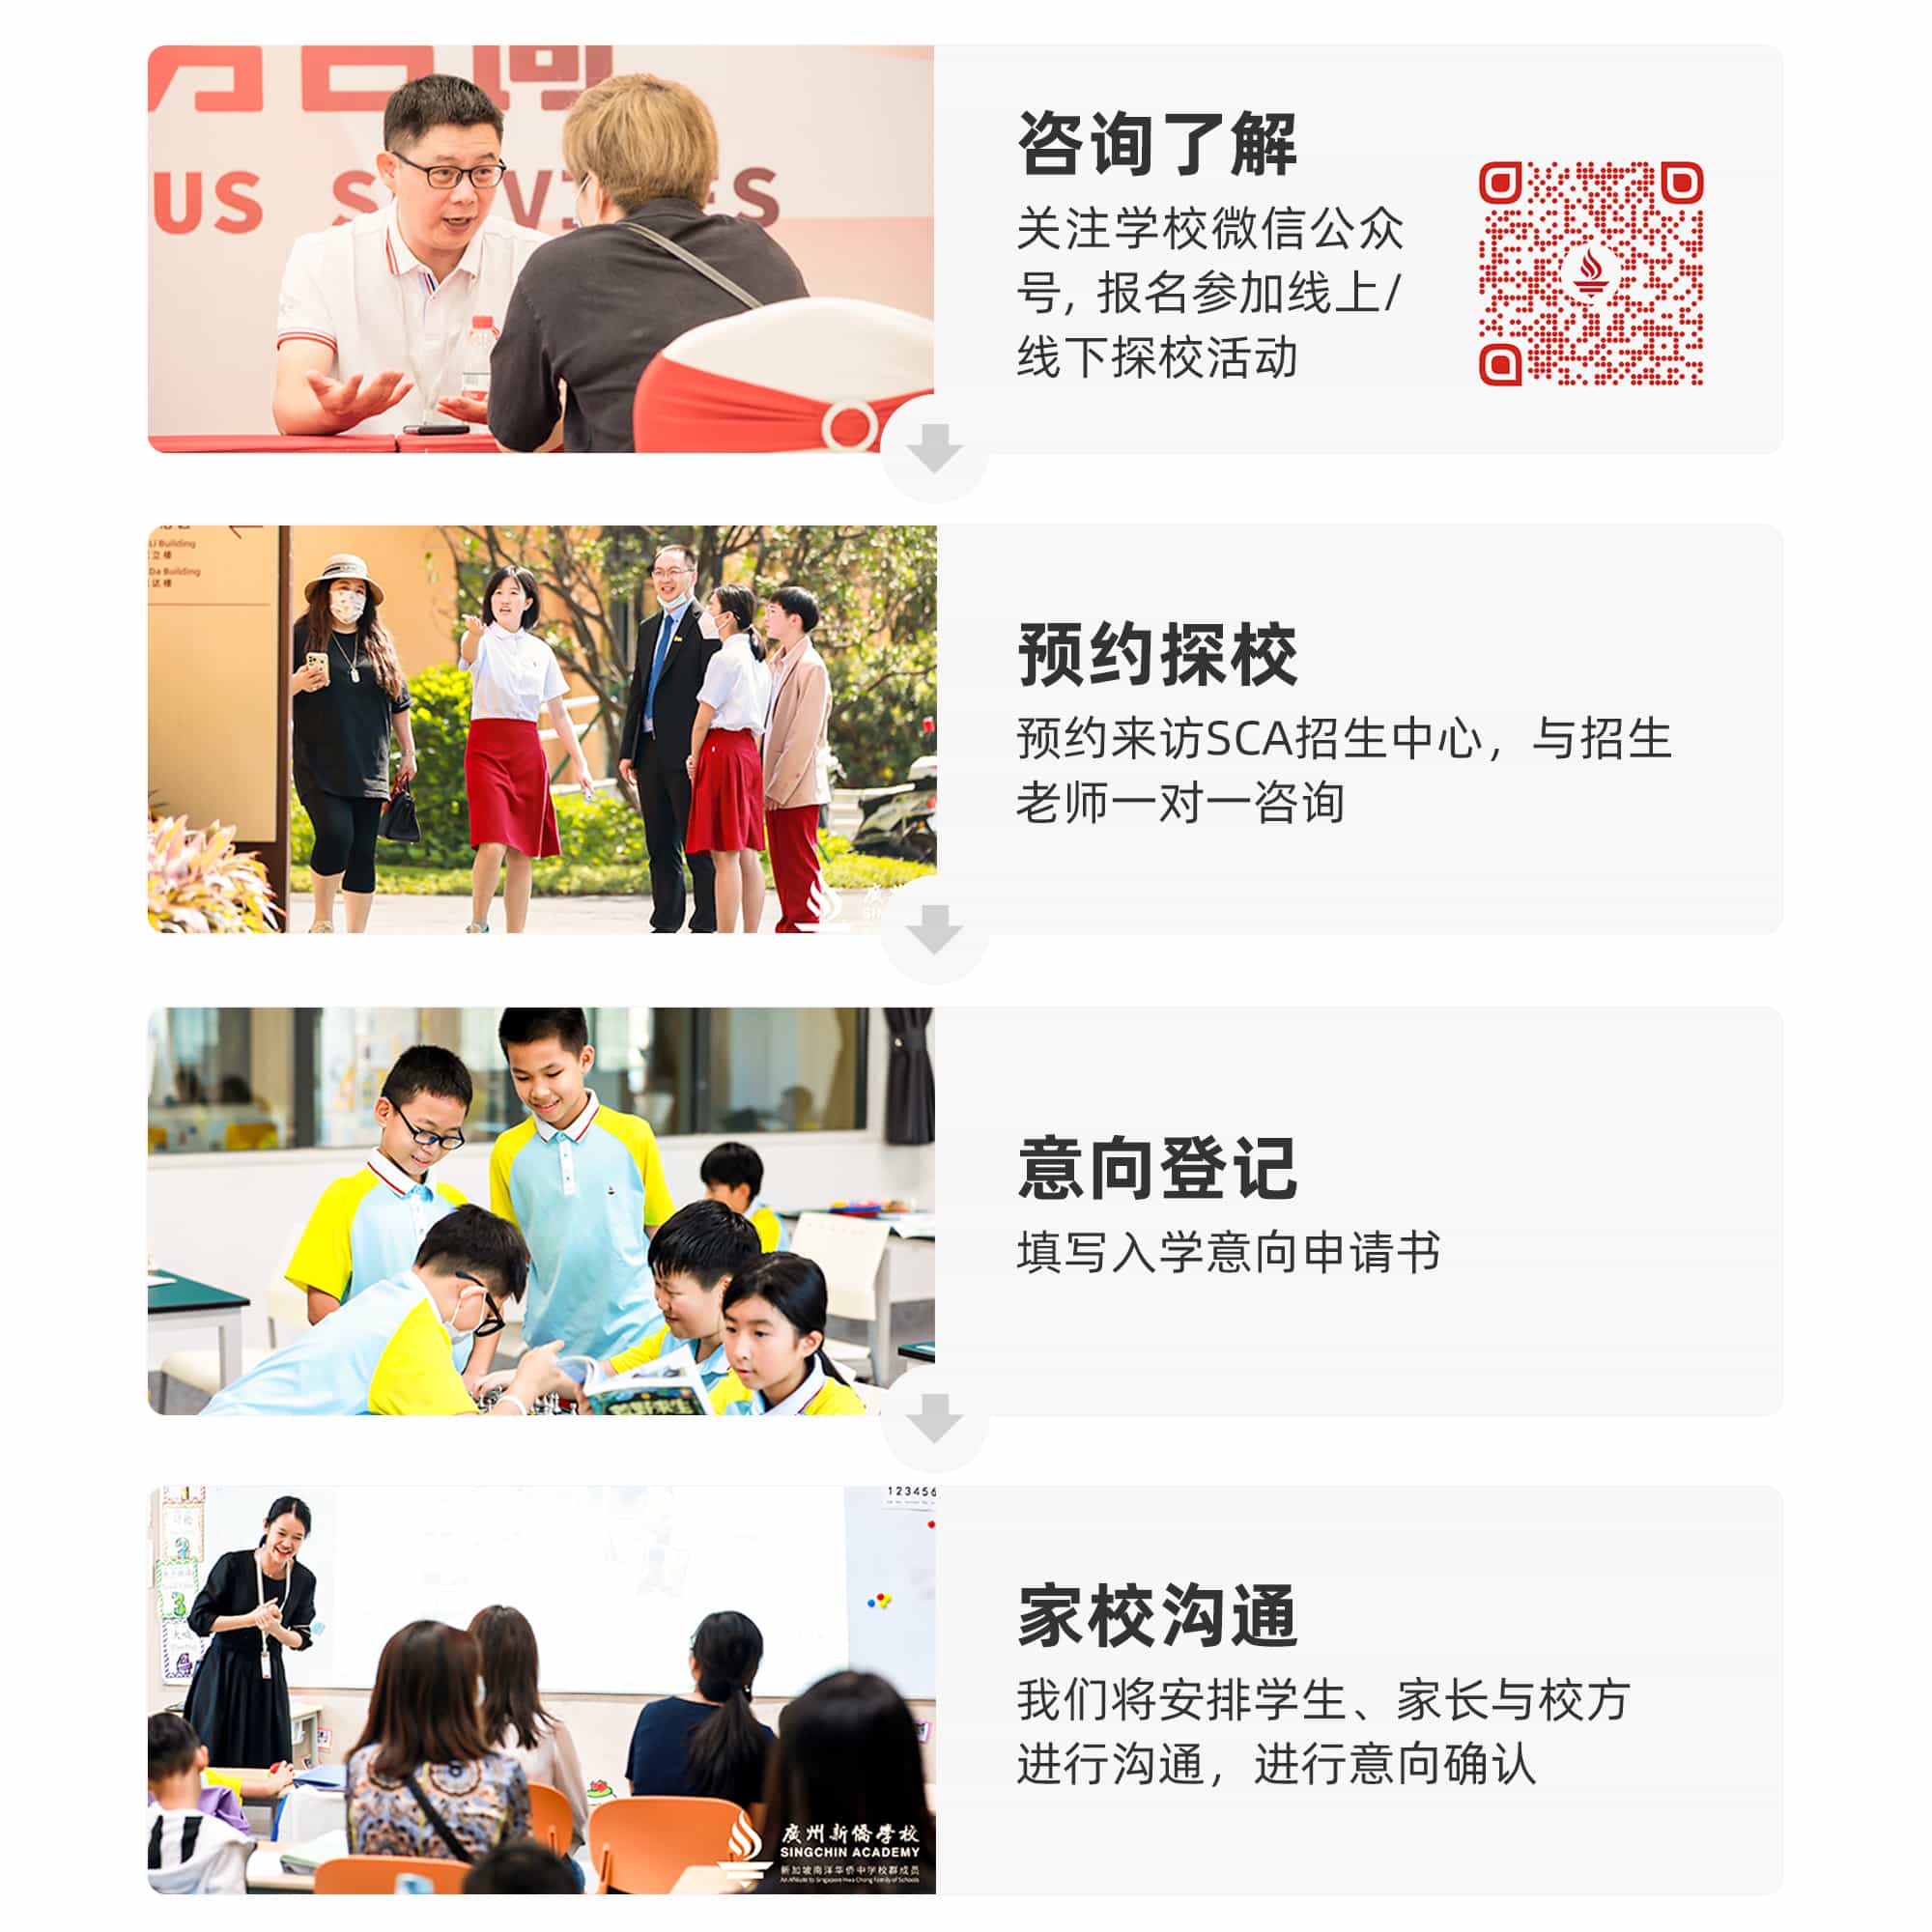 Registration process of Guangzhou Xinqiao school